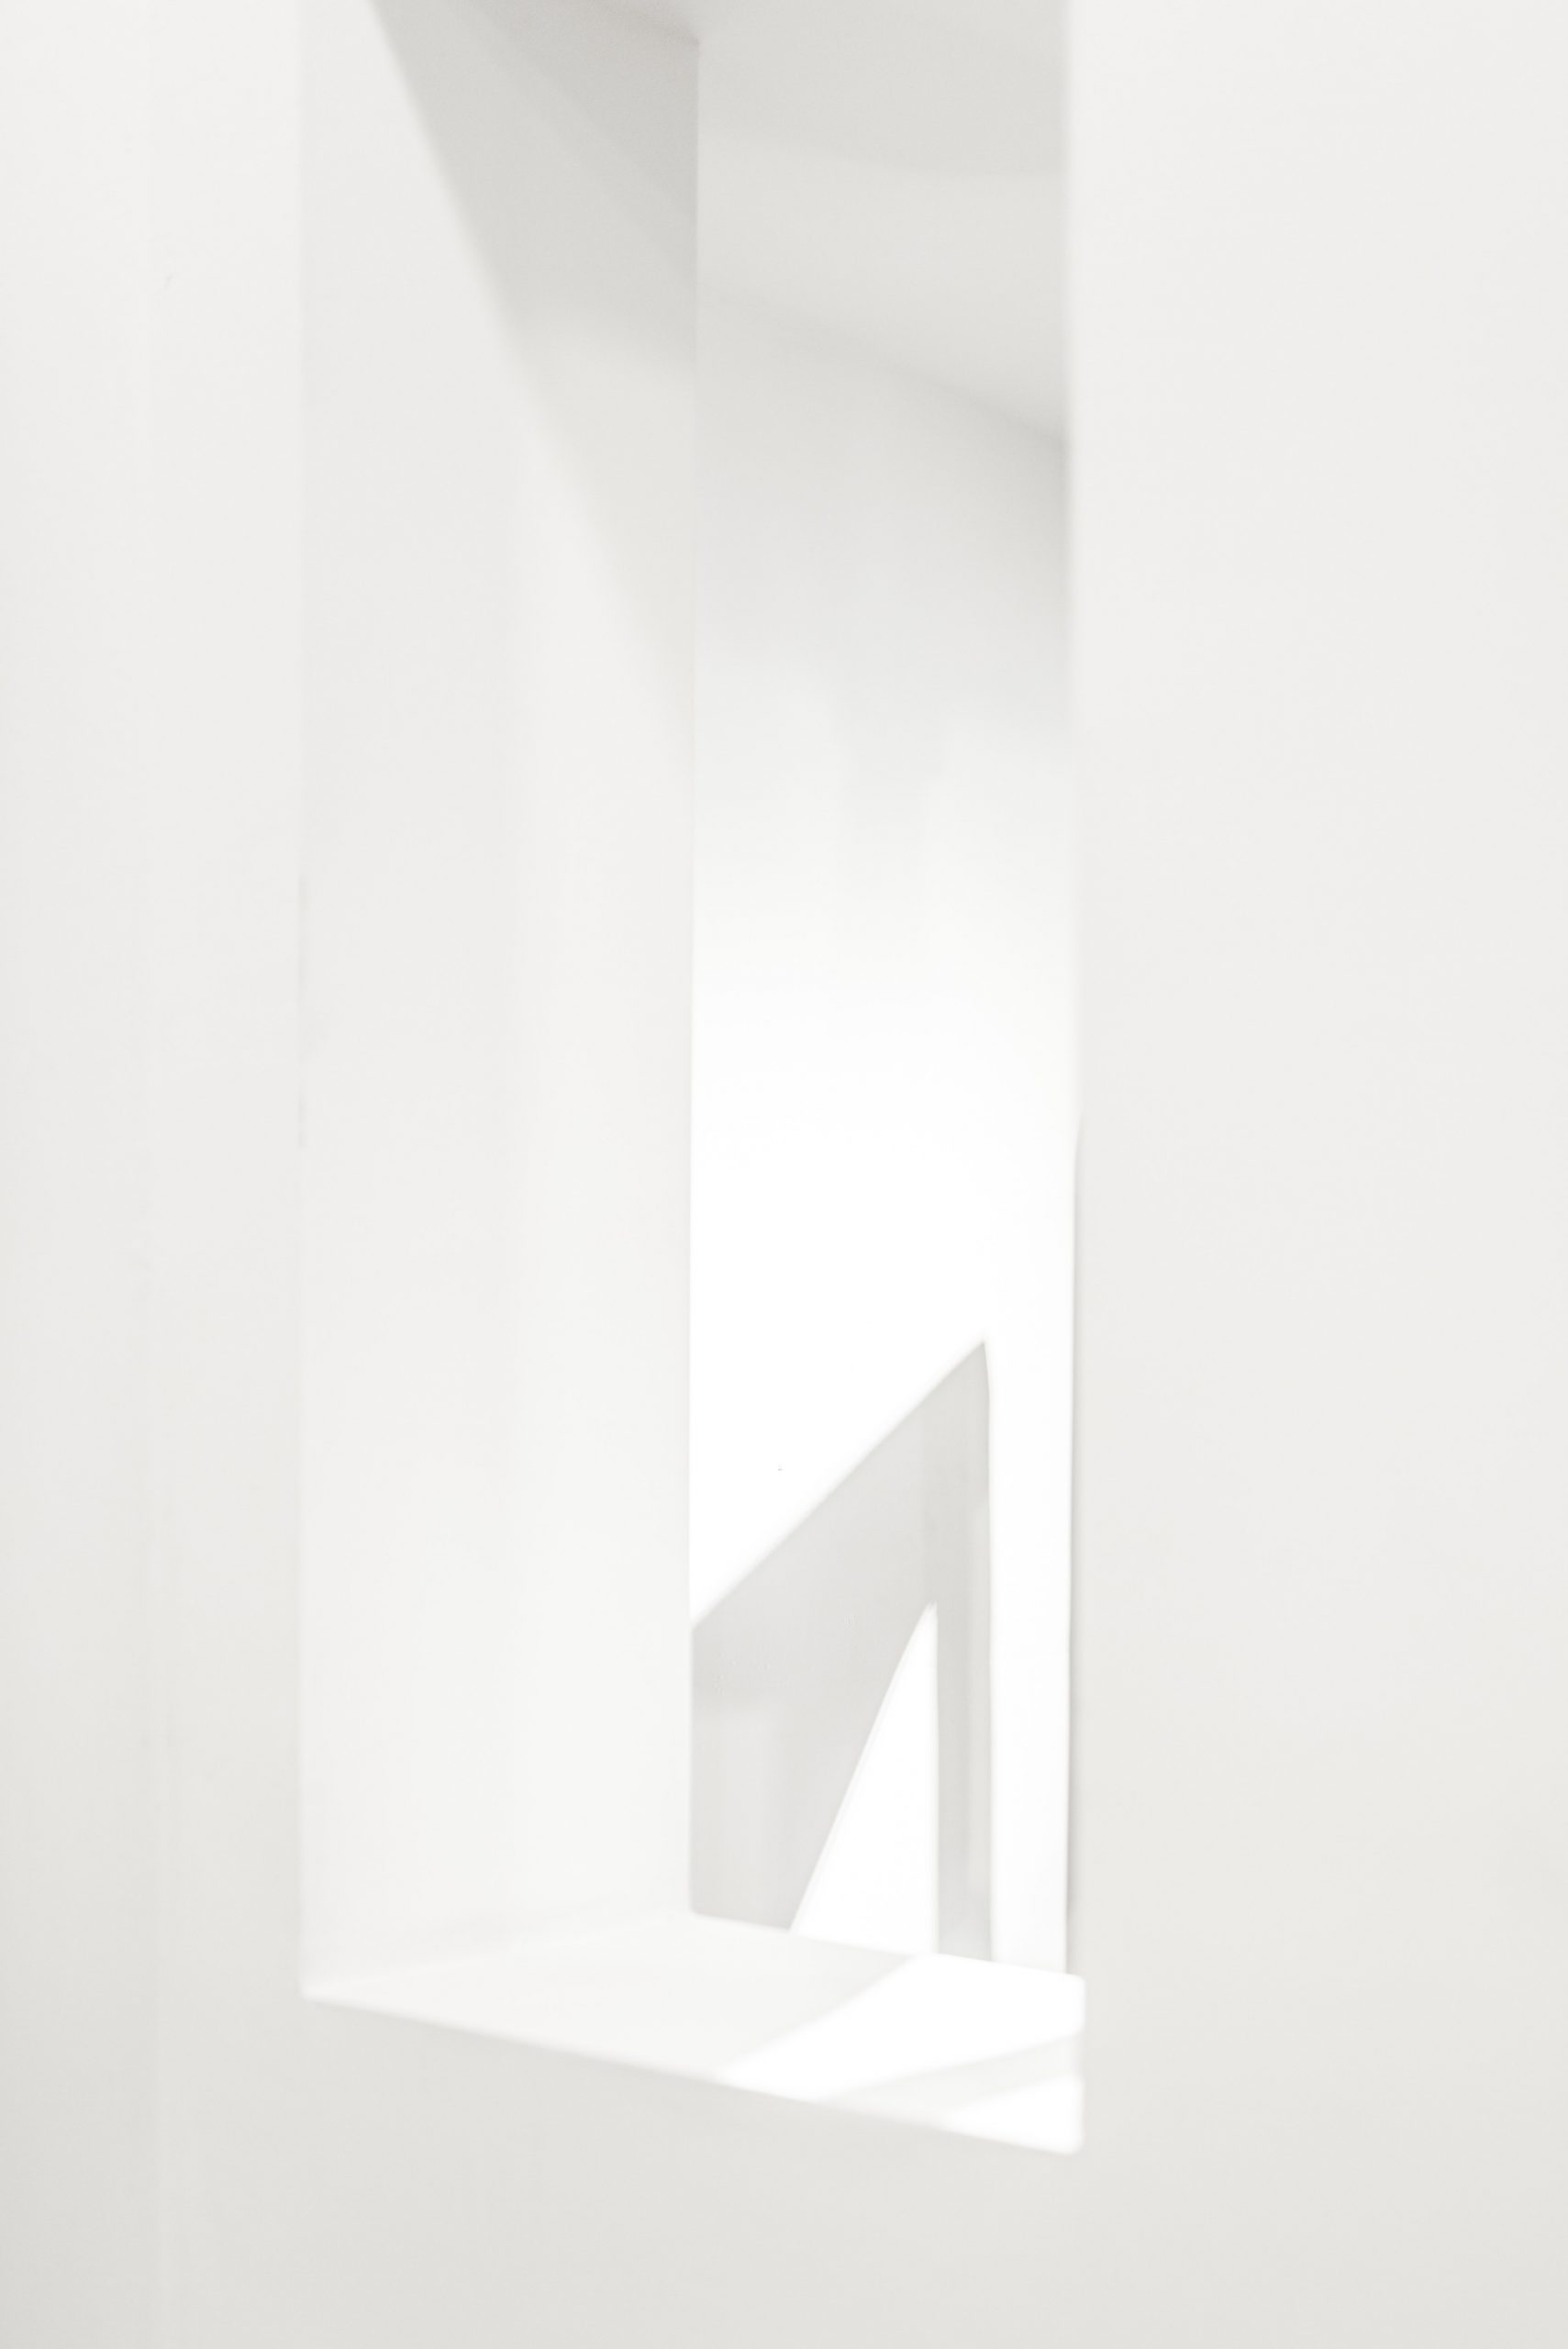 monochromes weißes Bild das einen Fensterausschnitte zeigt und mit Licht und Schatten spielt